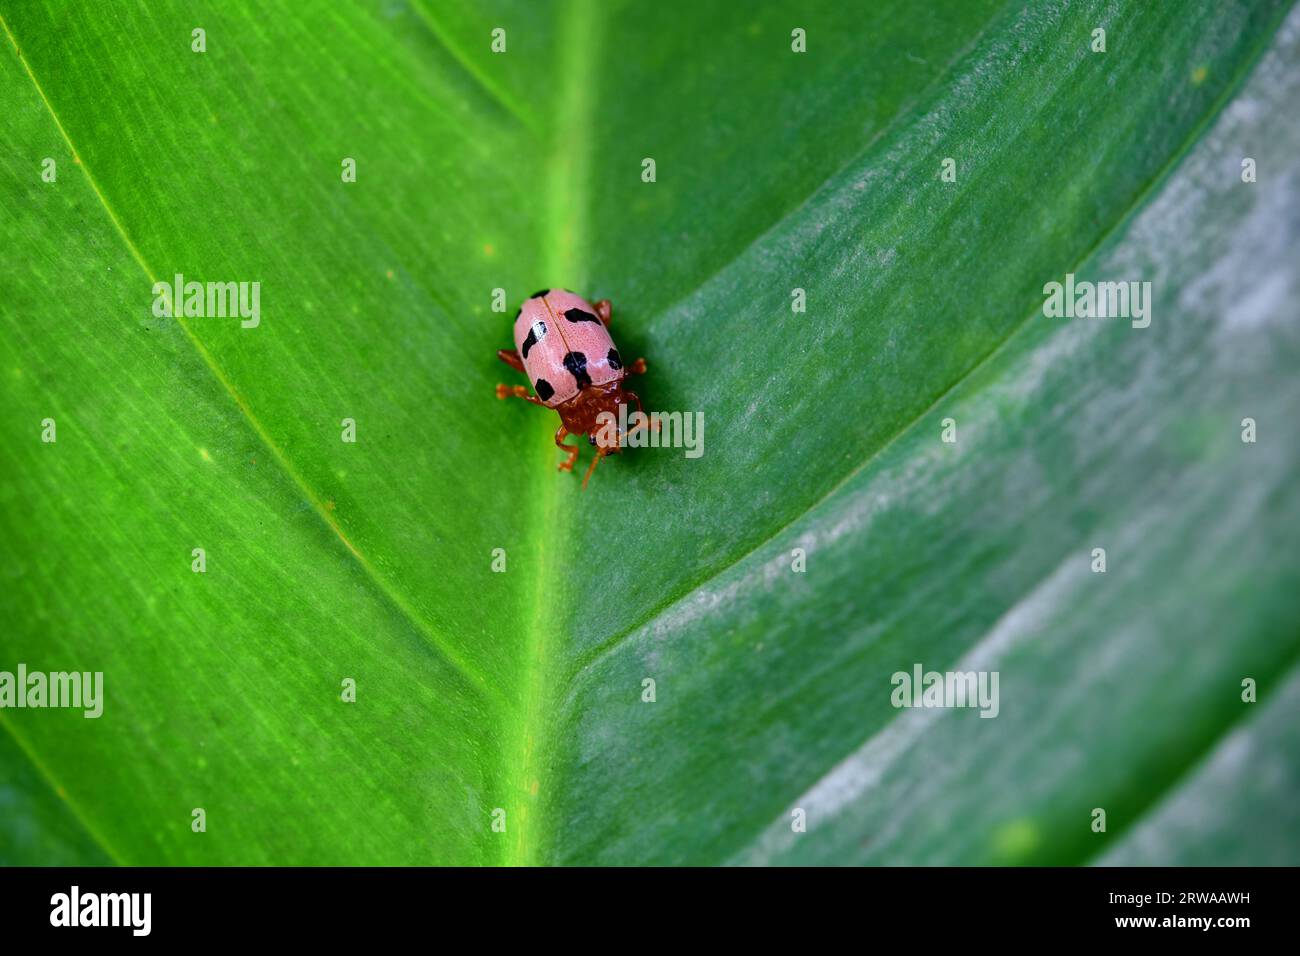 Close-up of  ladybug on green leaf Stock Photo